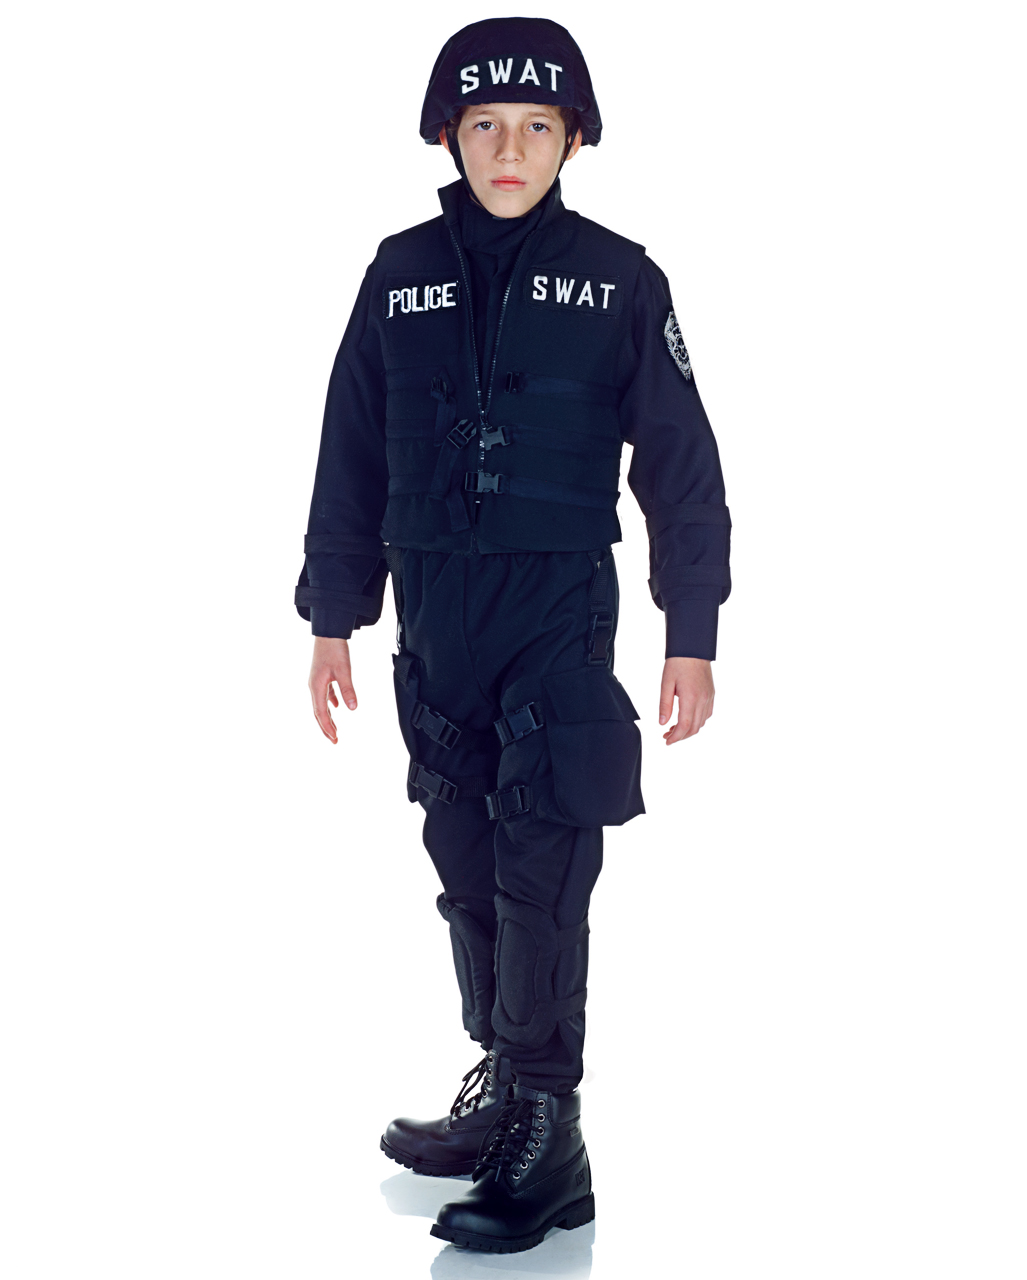 Polizei Kostüm für Kinder Neon-Jacke mit Aufschrift Polizei inkl